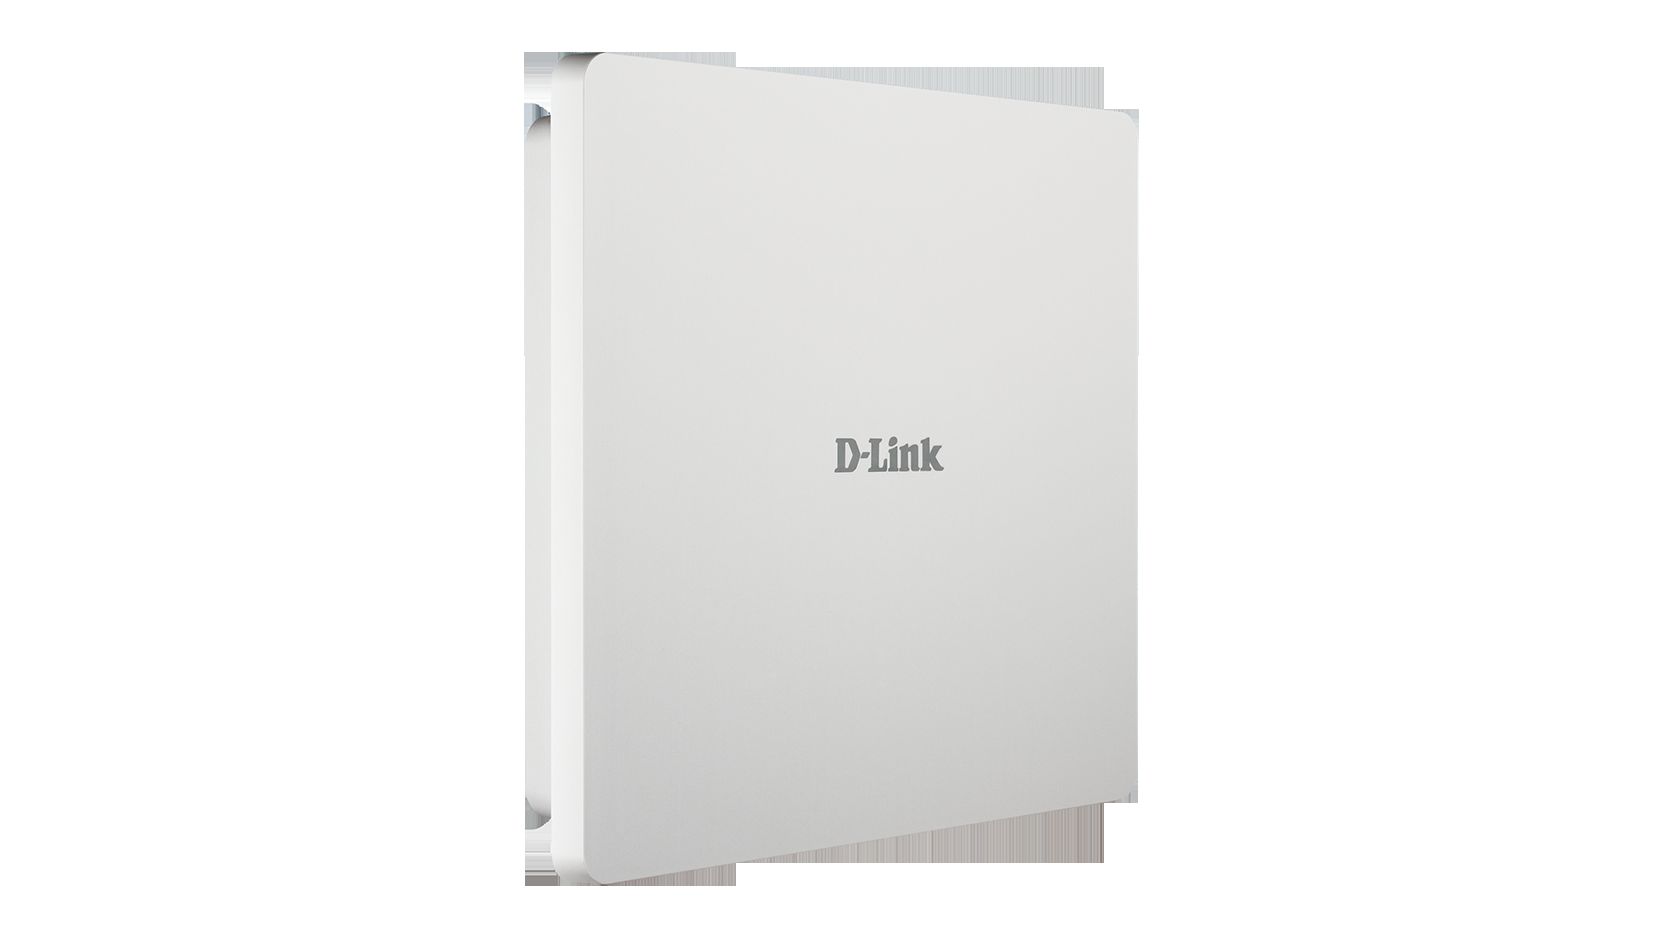 Nowe punkty dostępowe D-Linka zgodne z Wi-Fi CERTIFIED Passpoint®